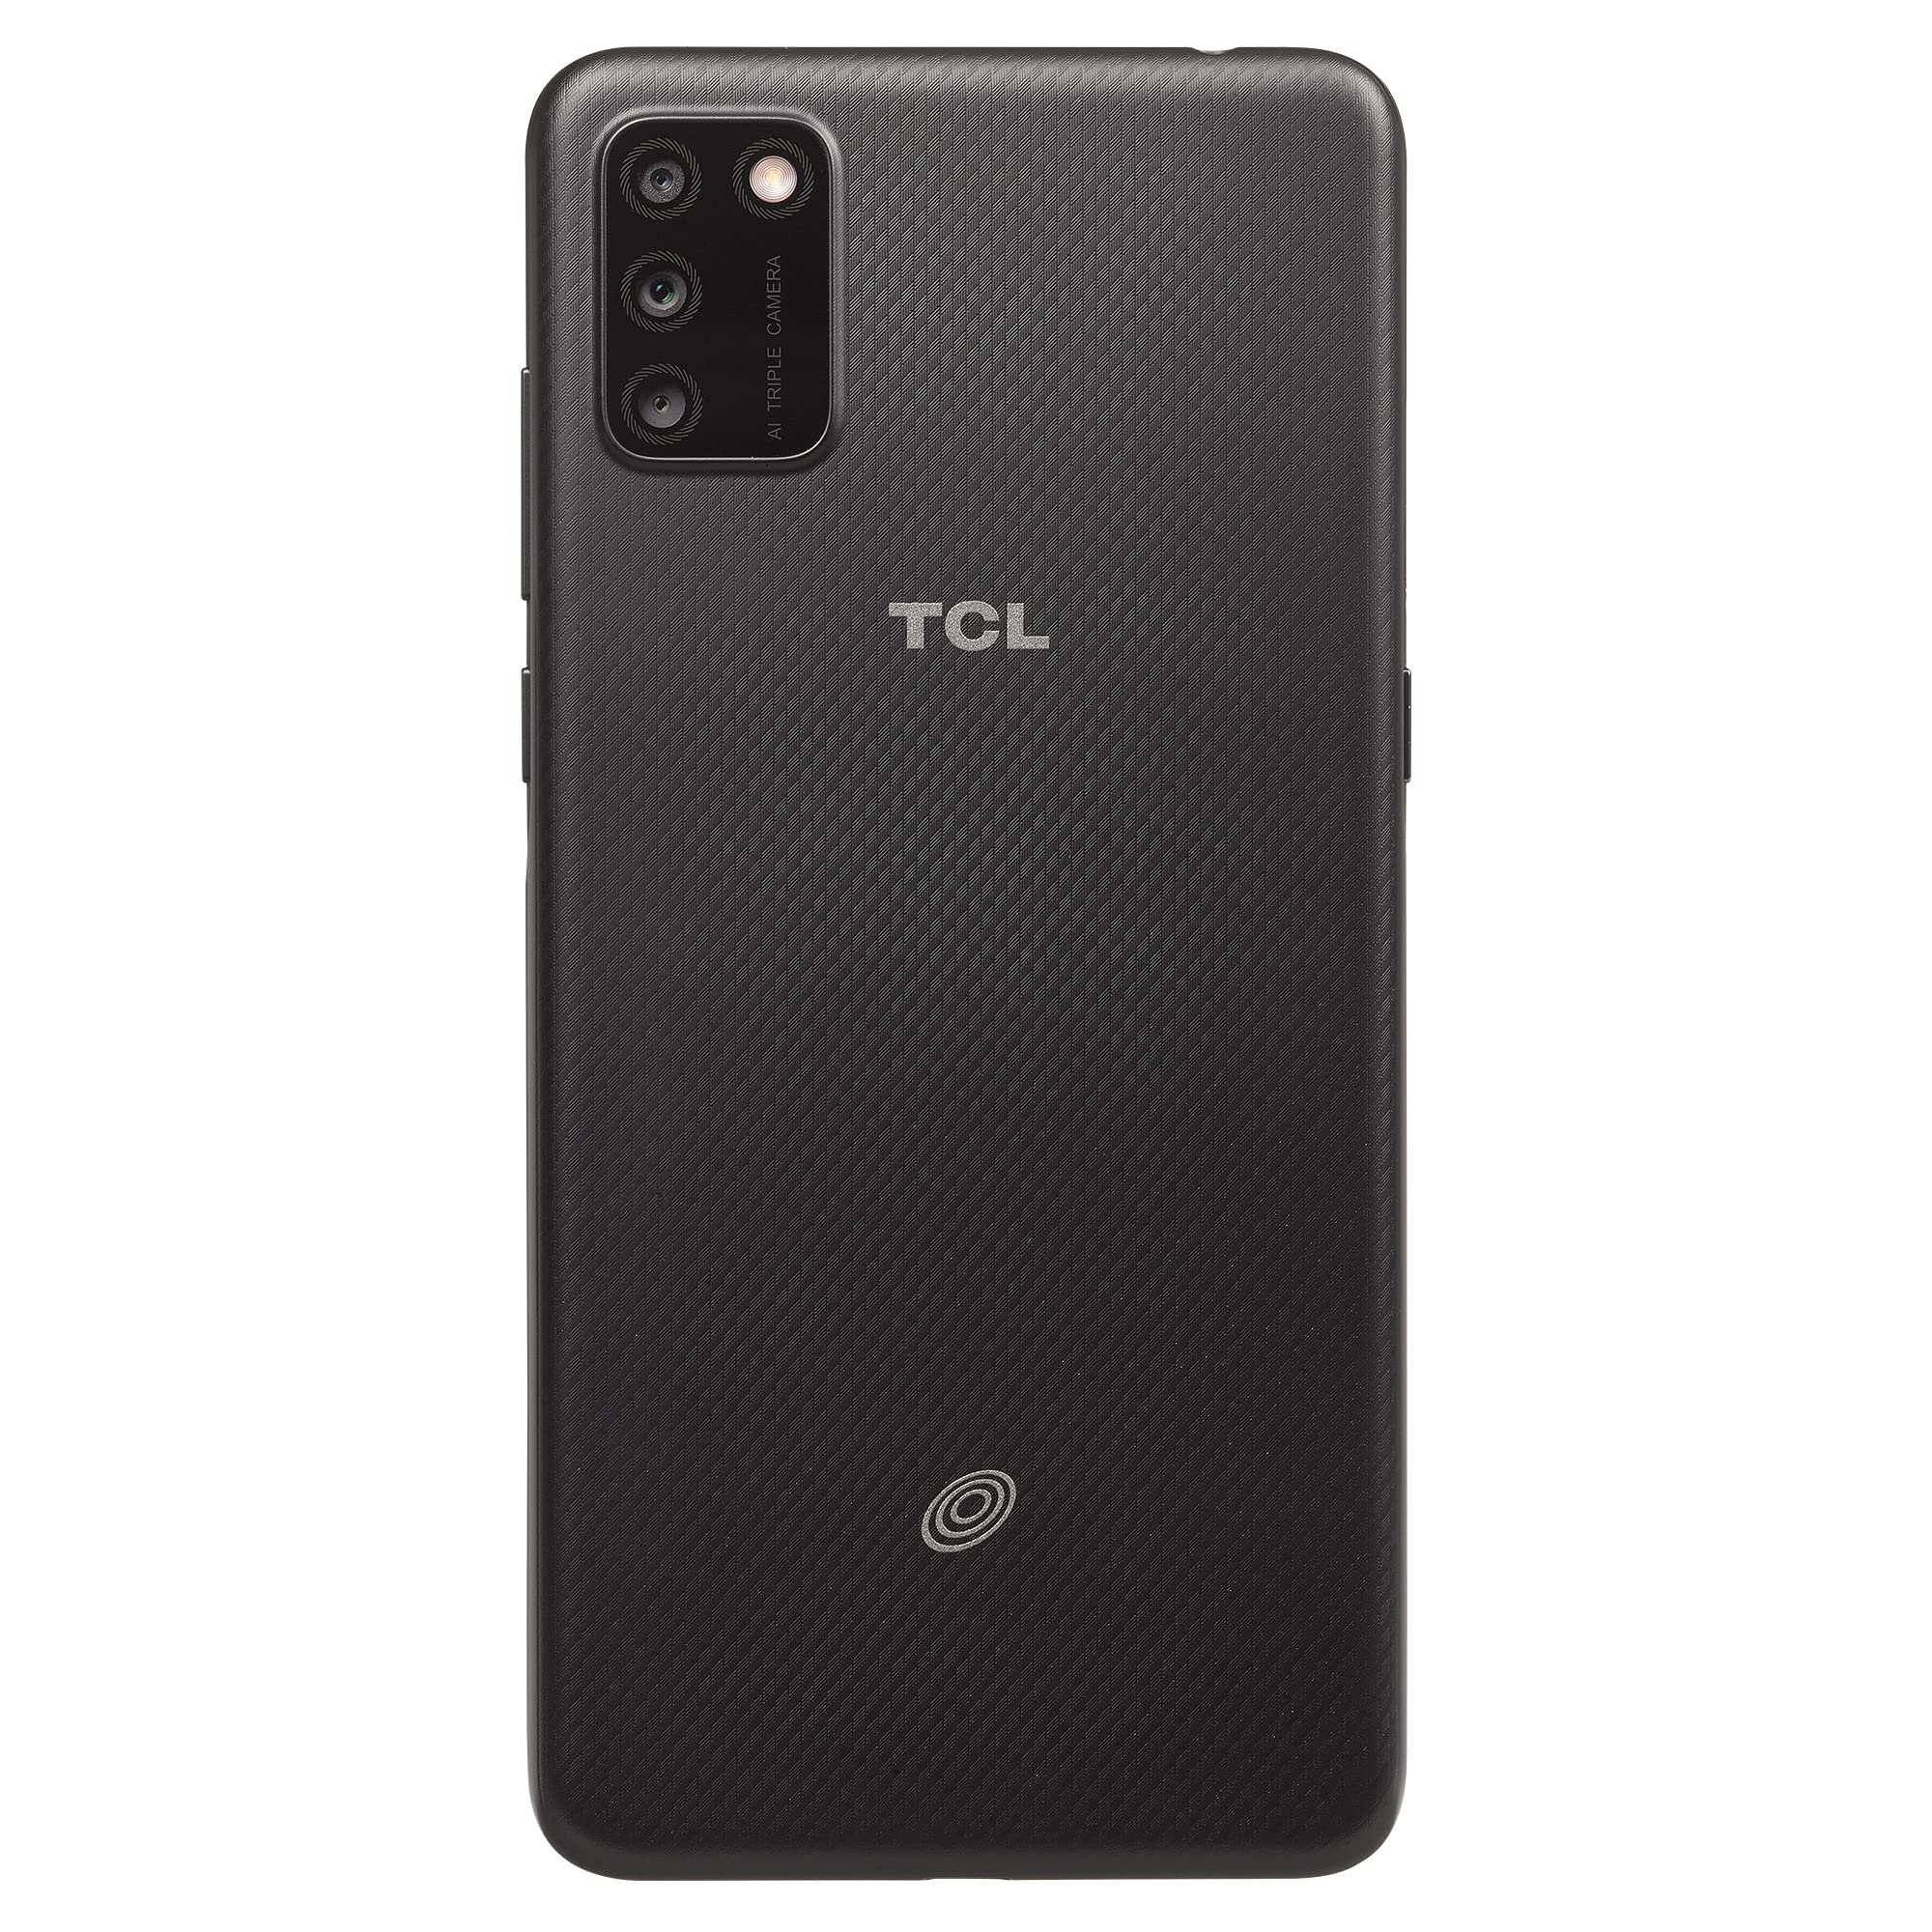 Tracfone Alcatel TCL A3X, 32GB, Prime Black - Prepaid Smartphone (Locked)